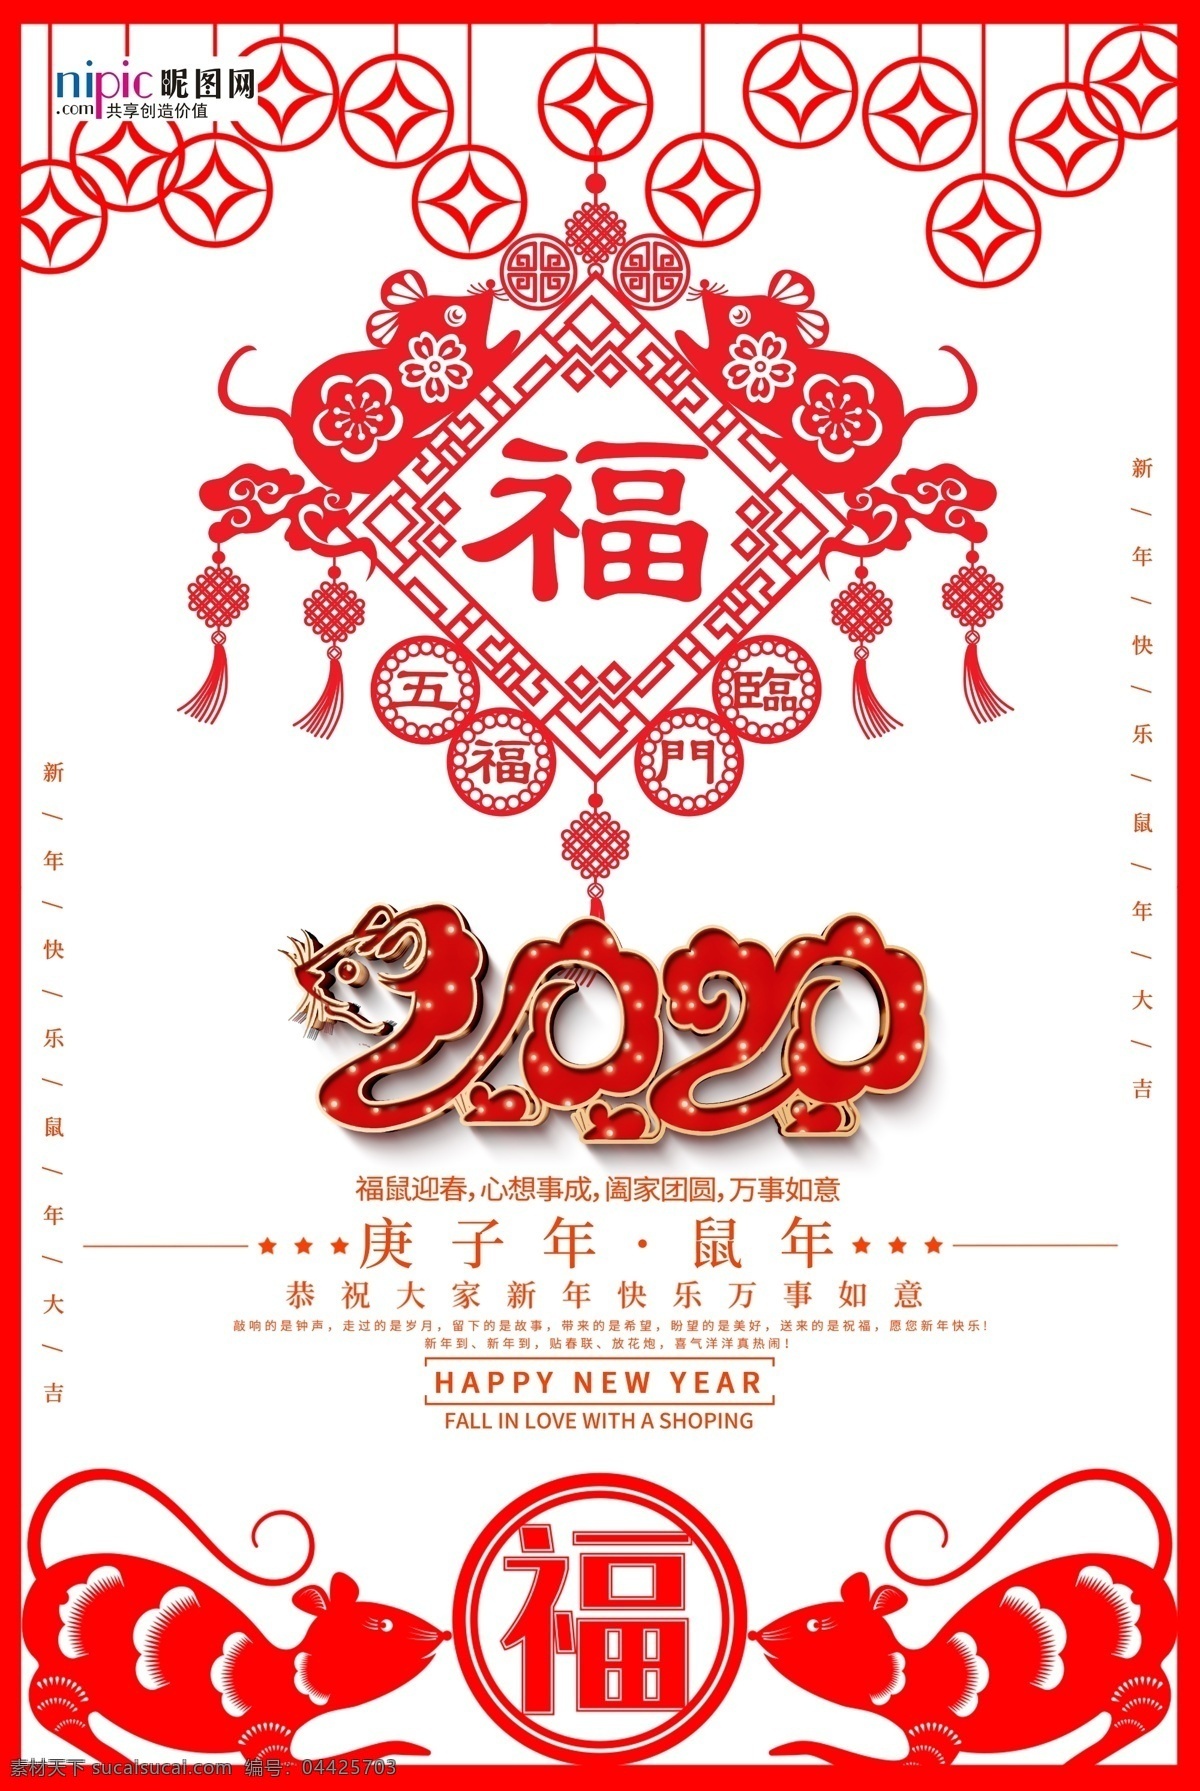 鼠年剪纸海报 福字 中国结 老鼠 灯笼 中国风 2020 剪纸